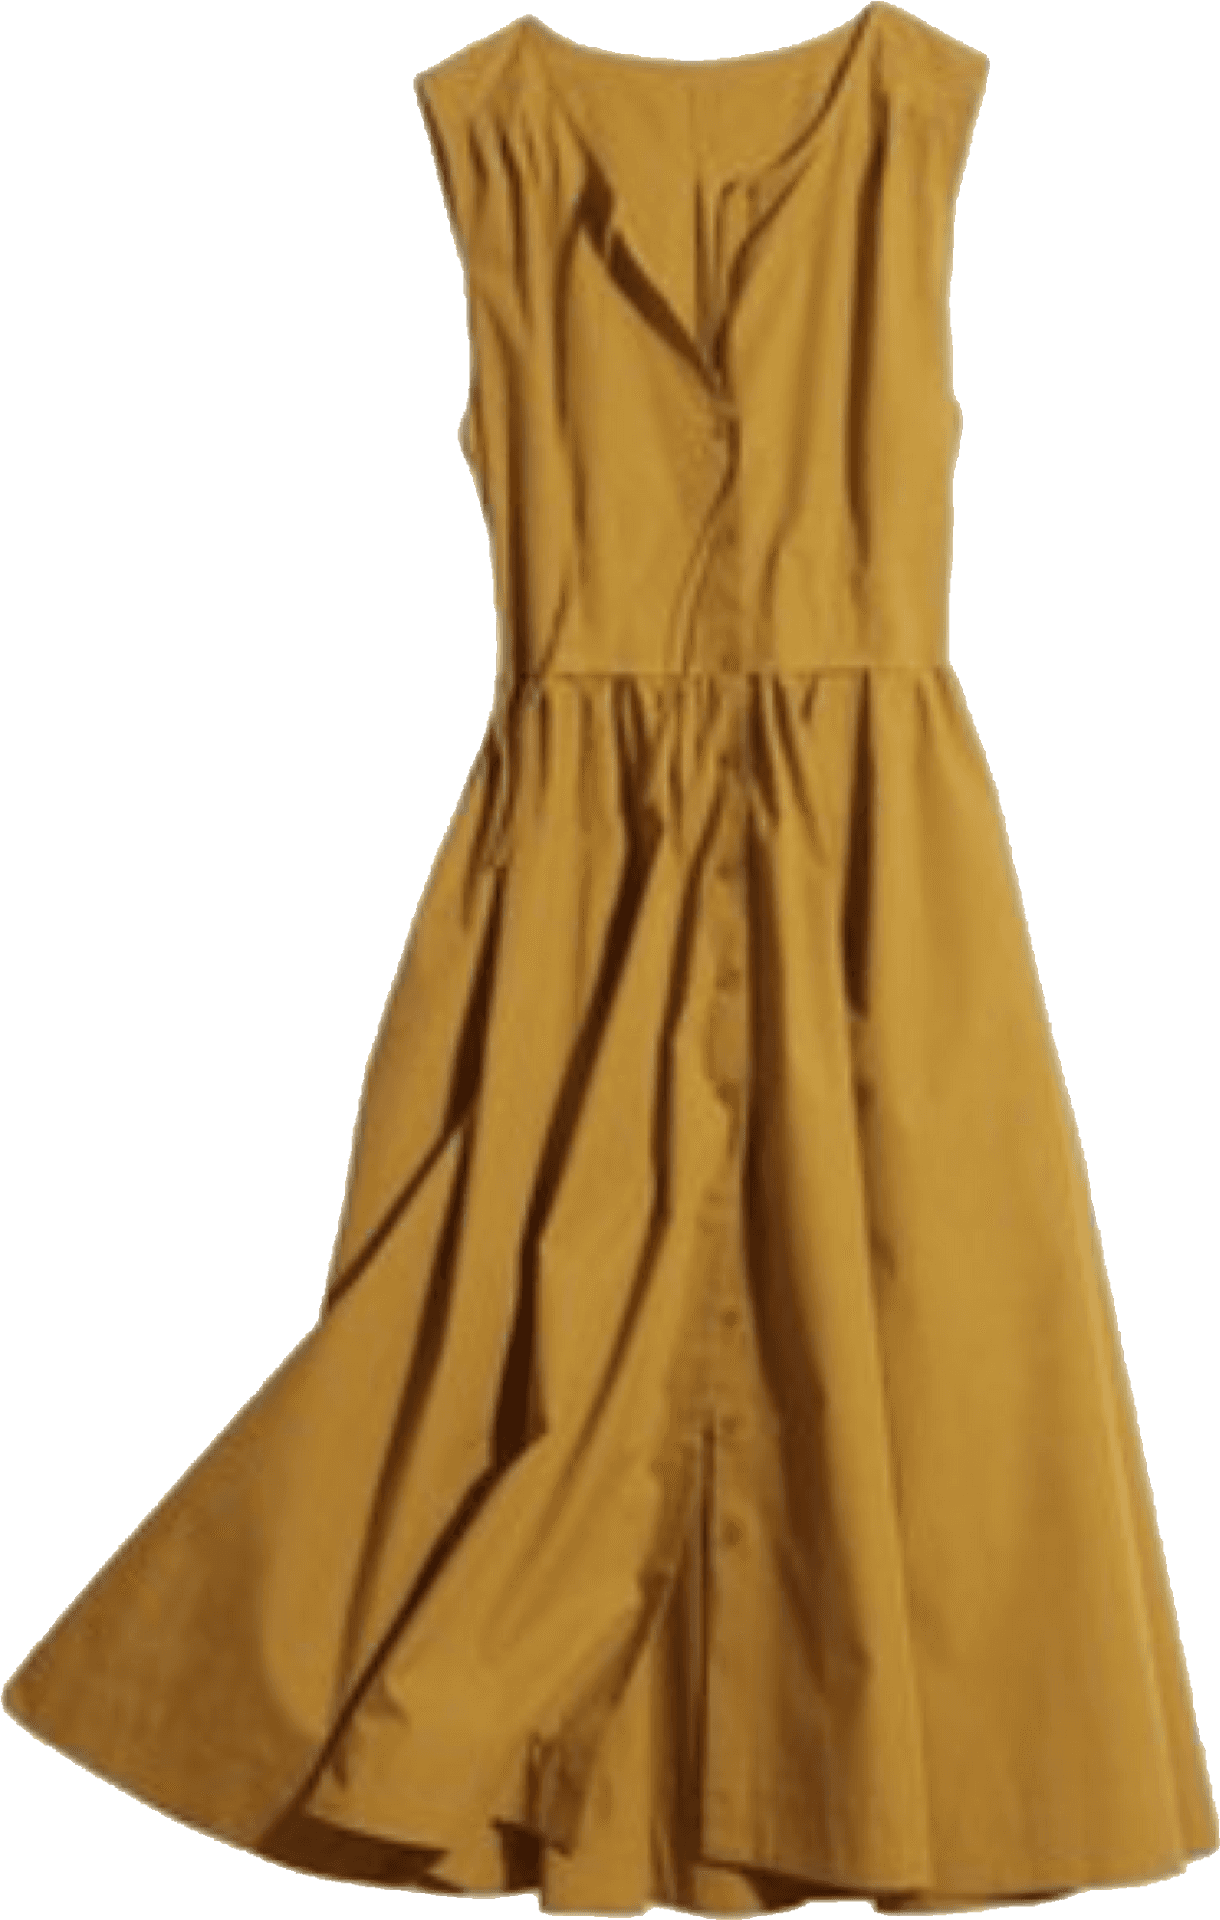 Mustard Yellow Sleeveless Dress PNG